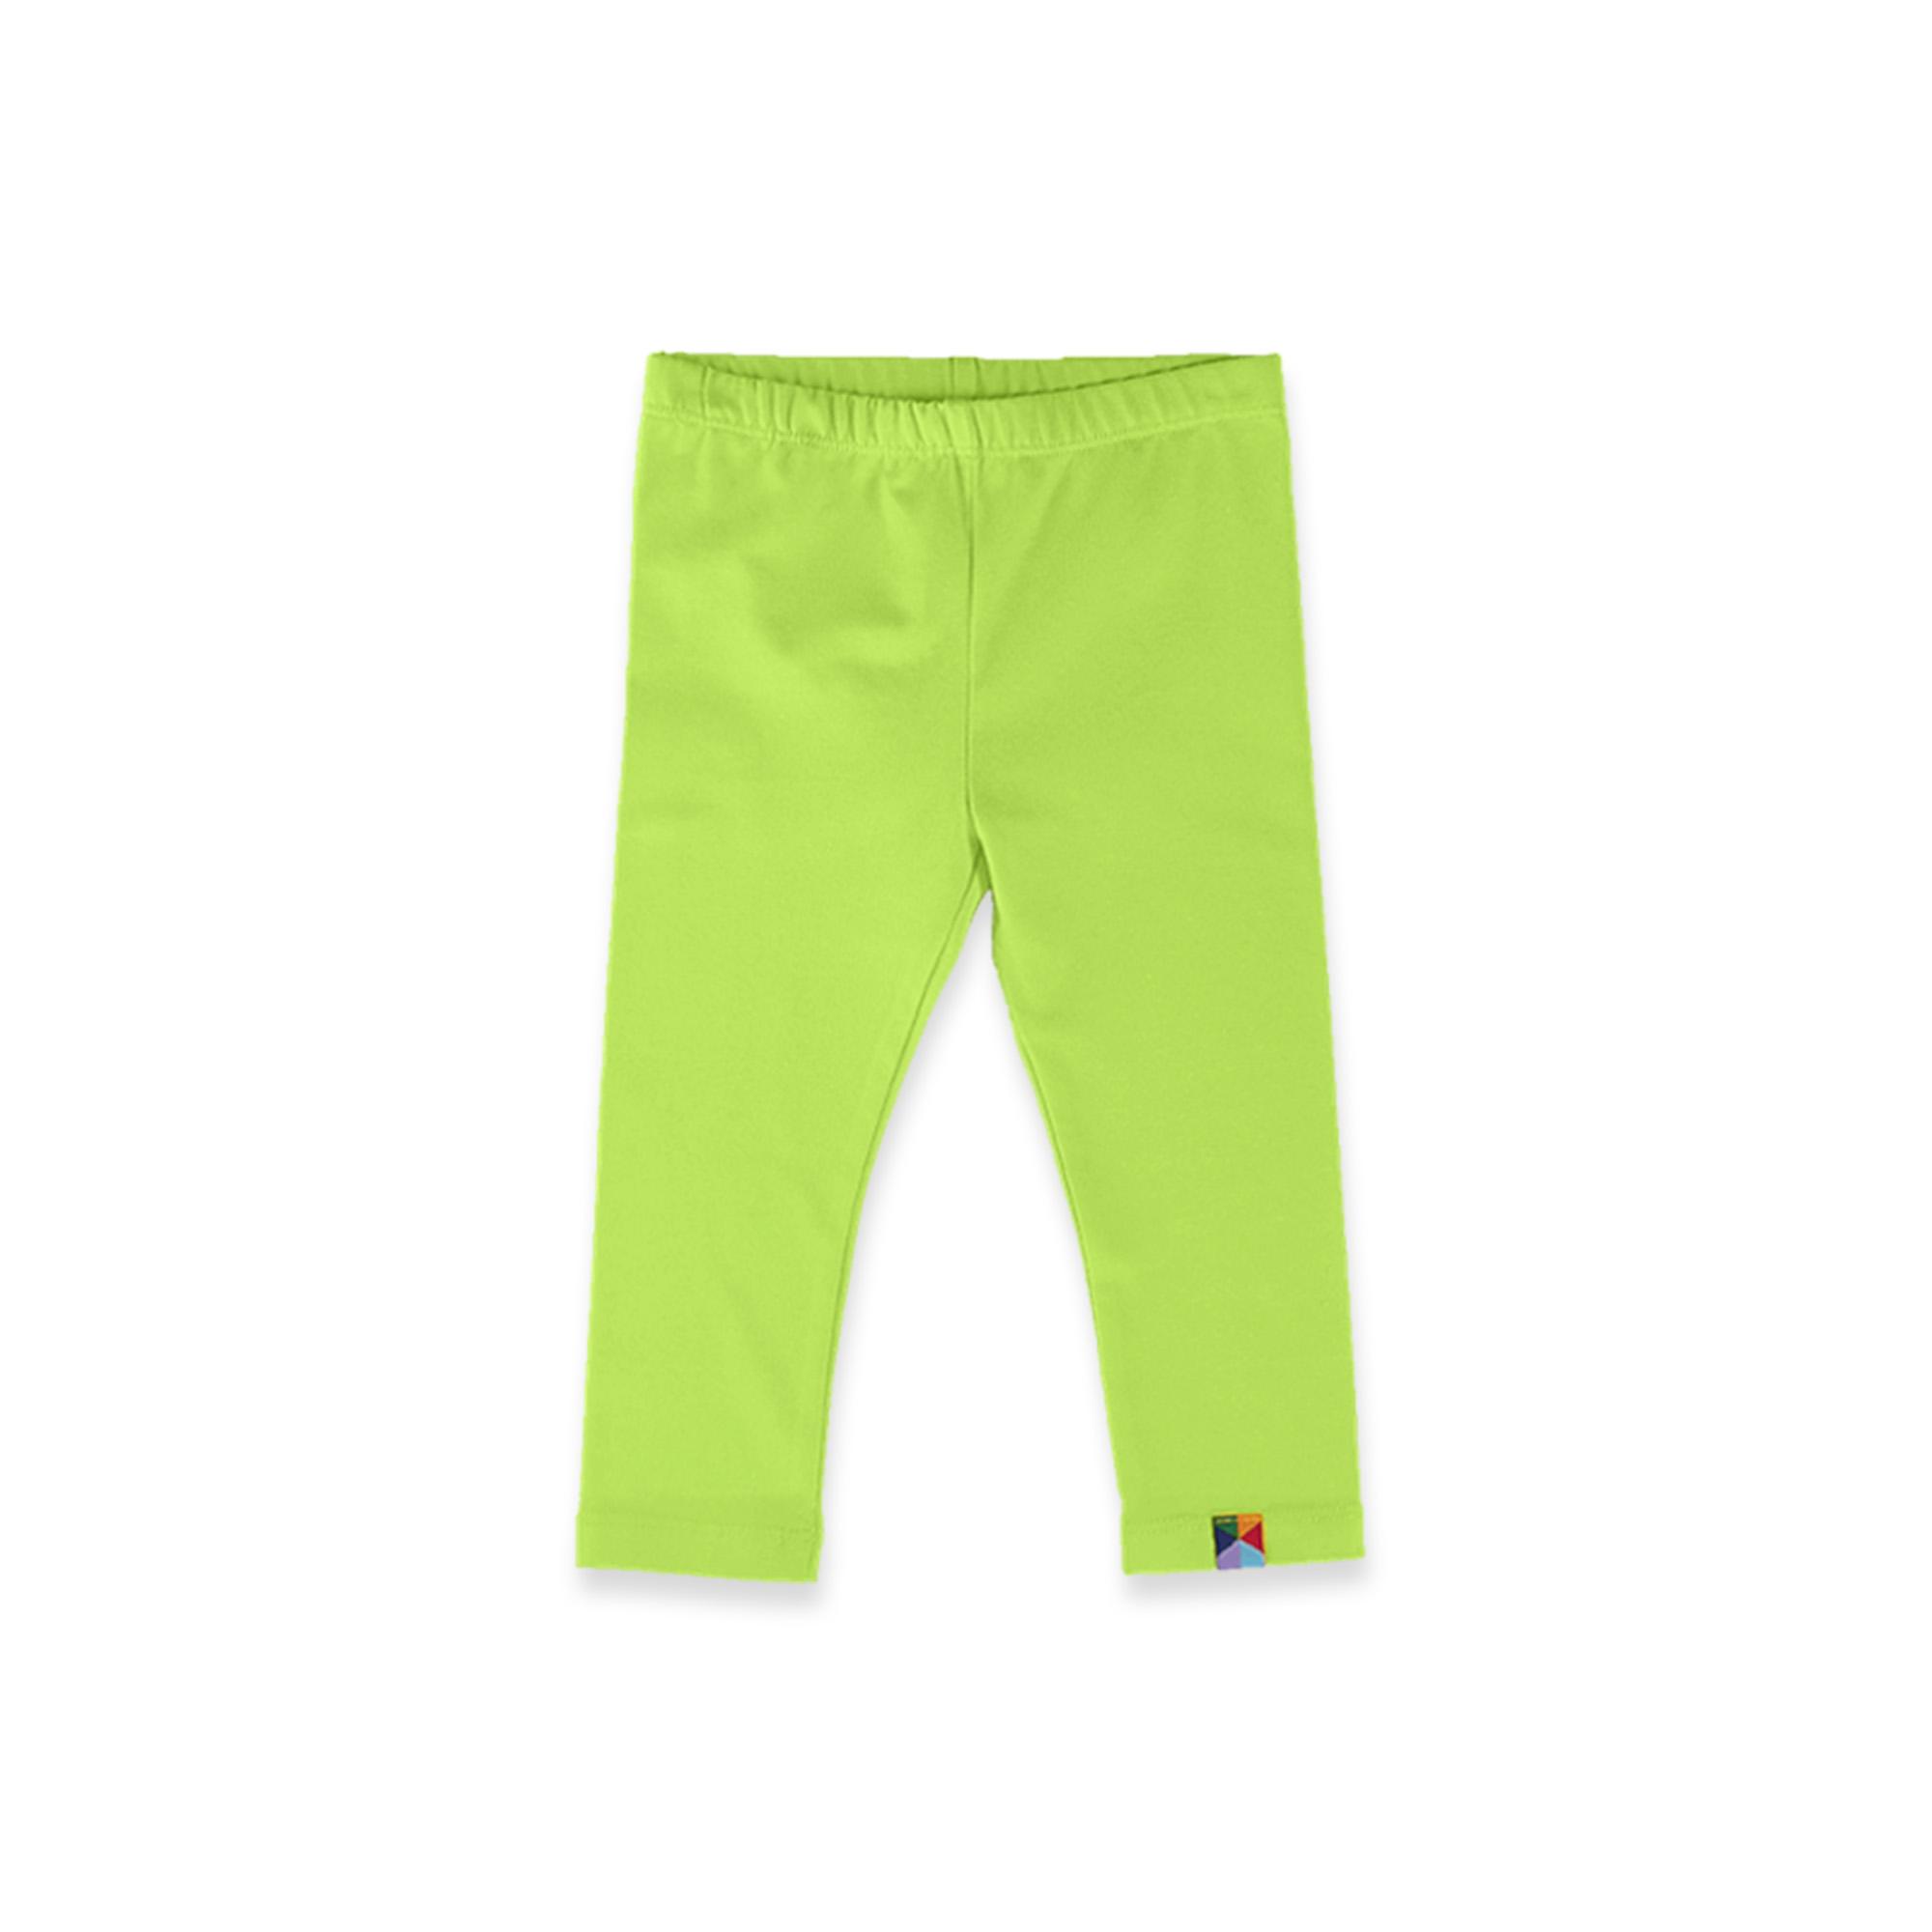 Lime green leggings 3/4